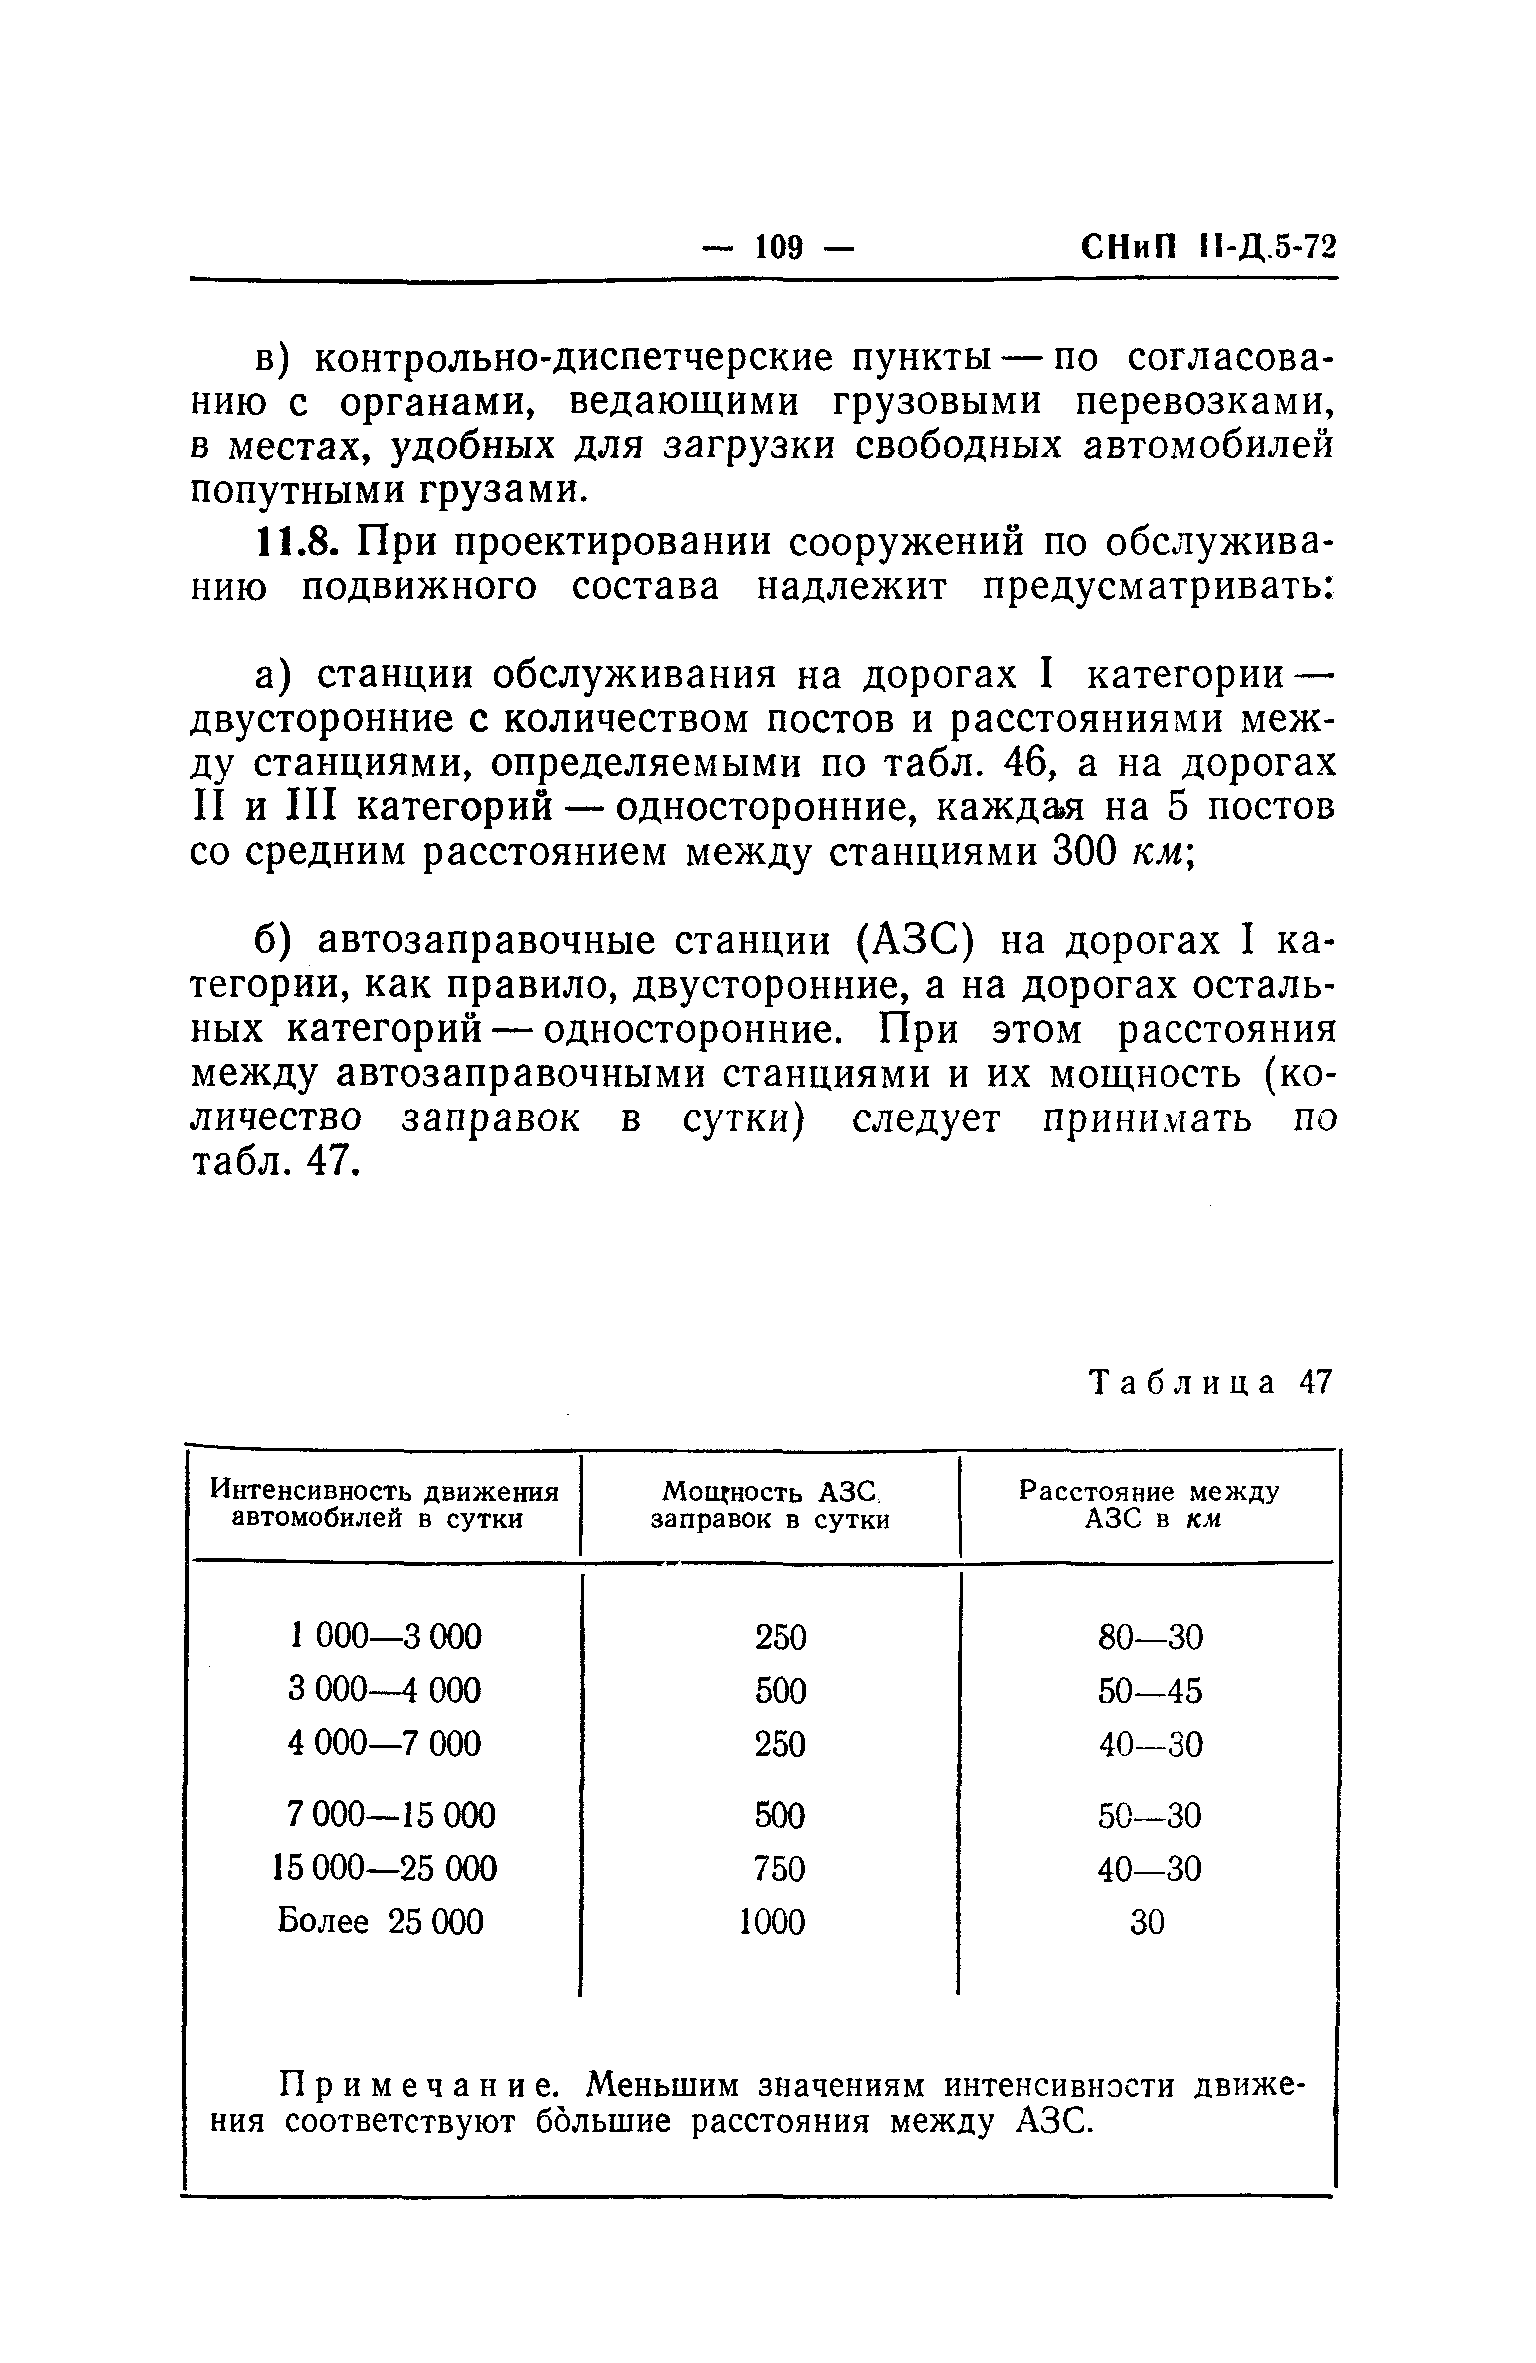 СНиП II-Д.5-72